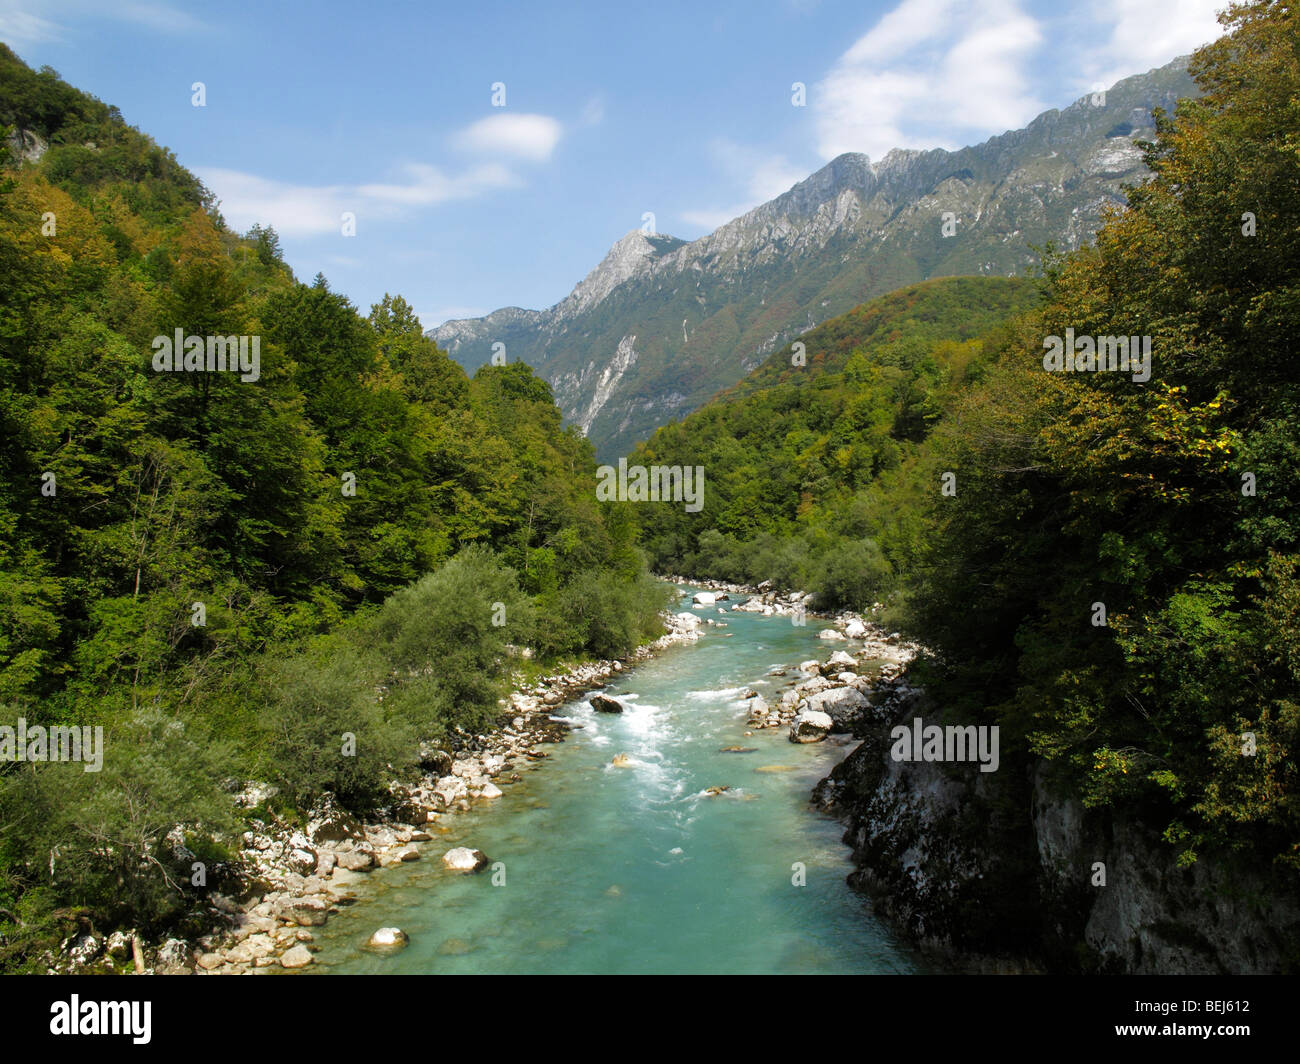 The River Soca and valley near Kobarid in Slovenia Stock Photo